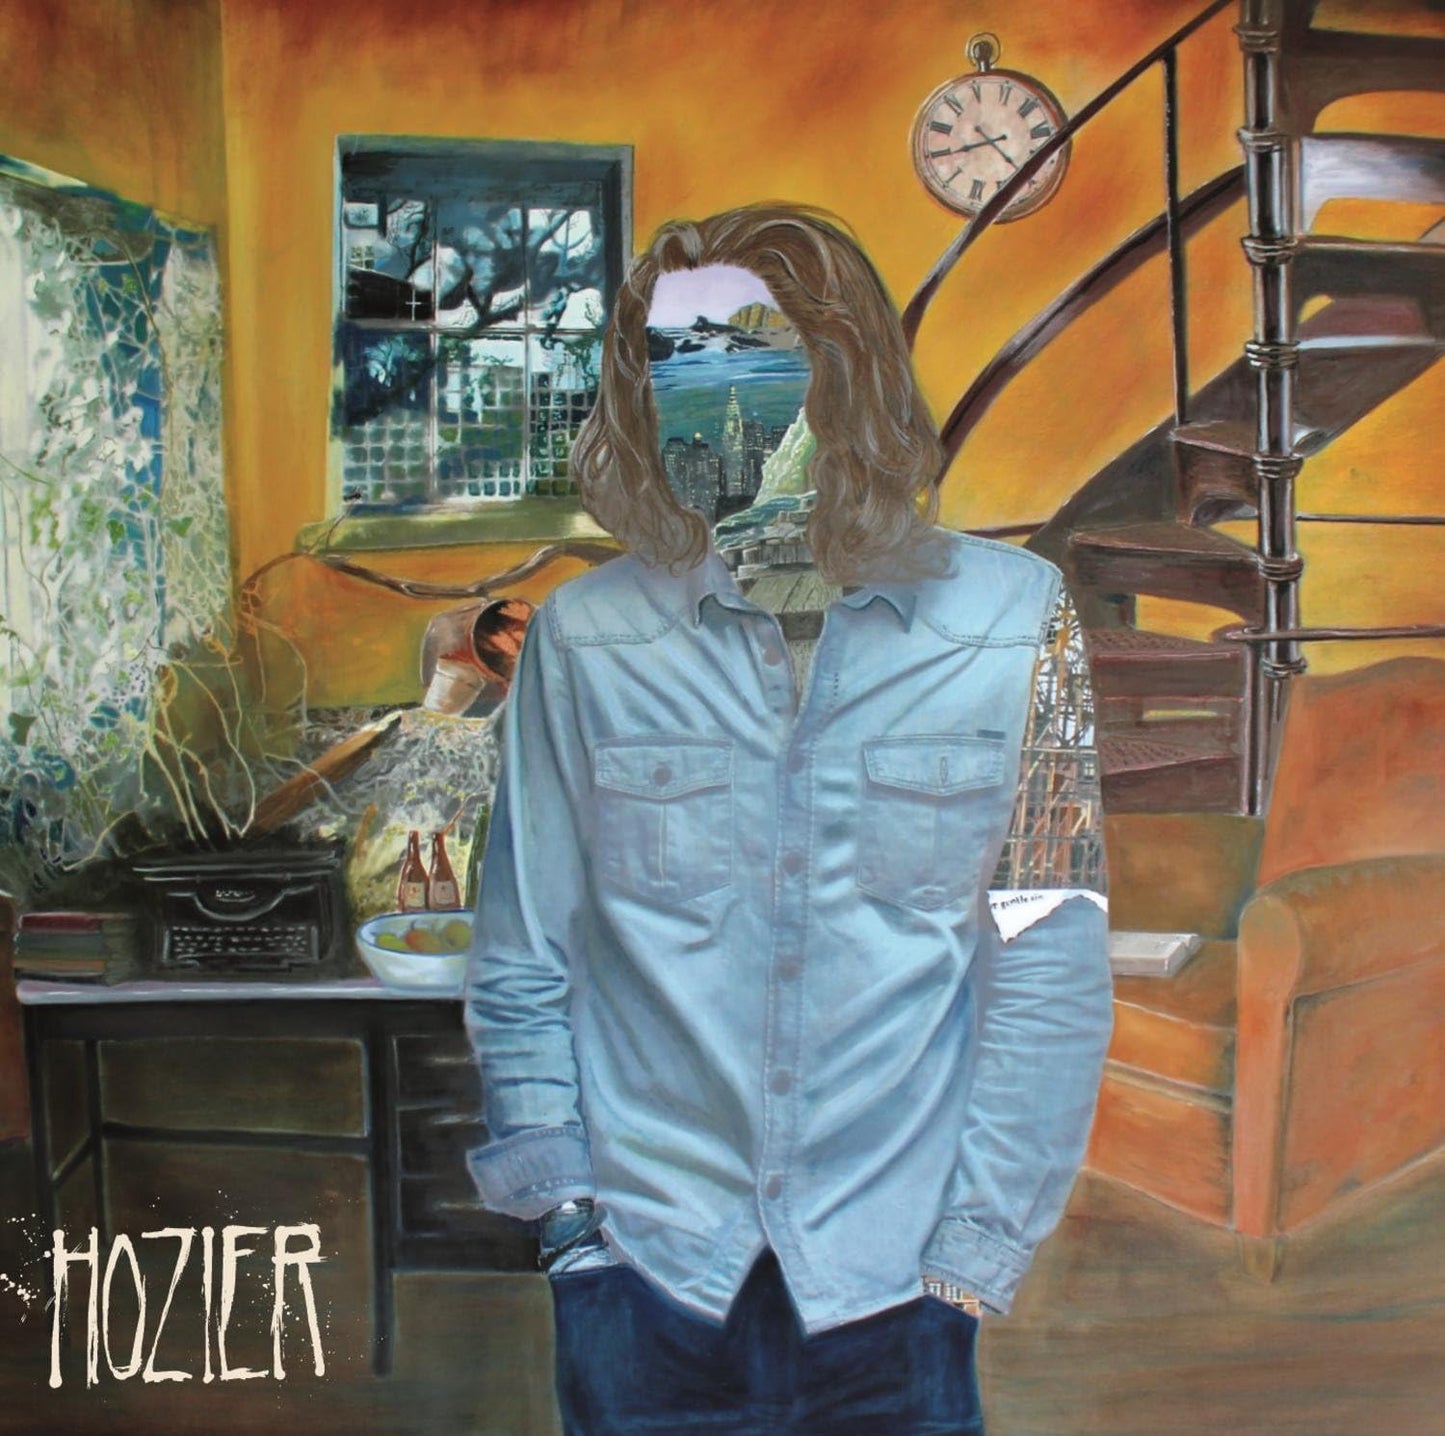 CD - Hozier - Self-titled